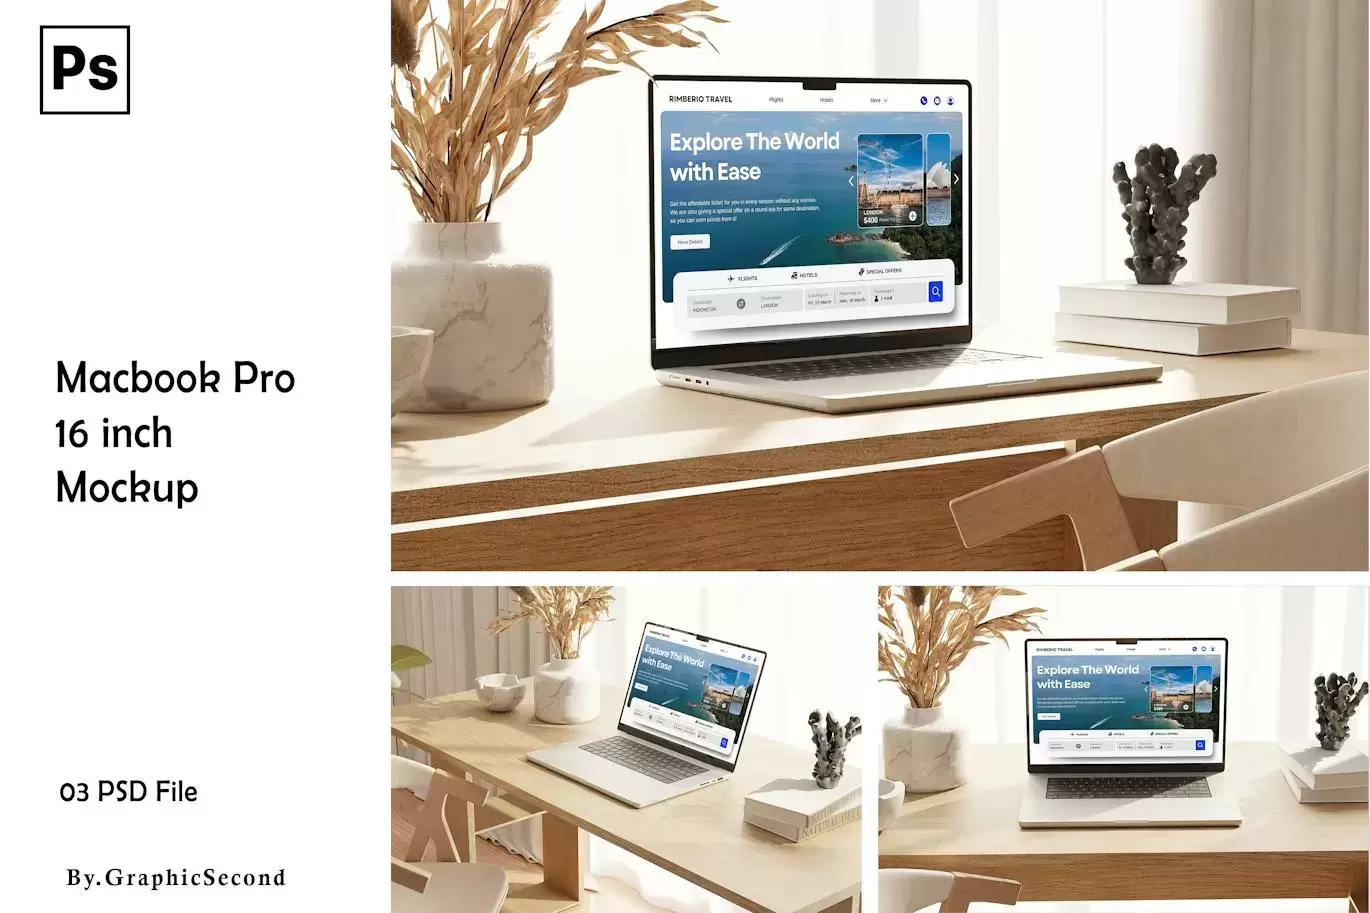 Macbook Pro 电脑样机 (PSD,PDF)免费下载